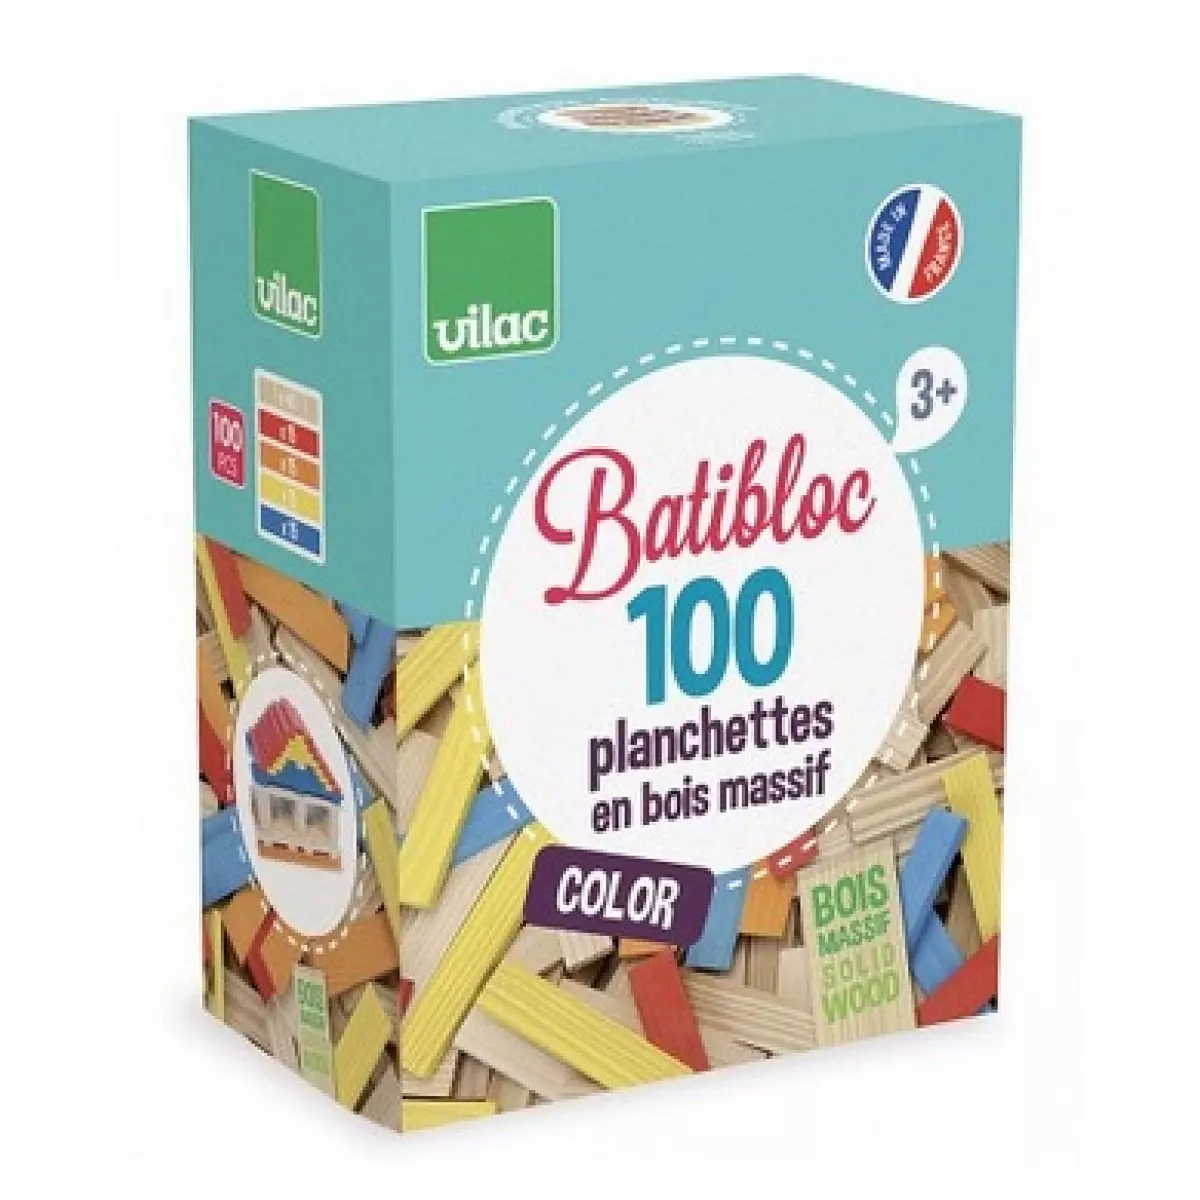 Vilac Batibloc color 100 planchettes enbois colorees